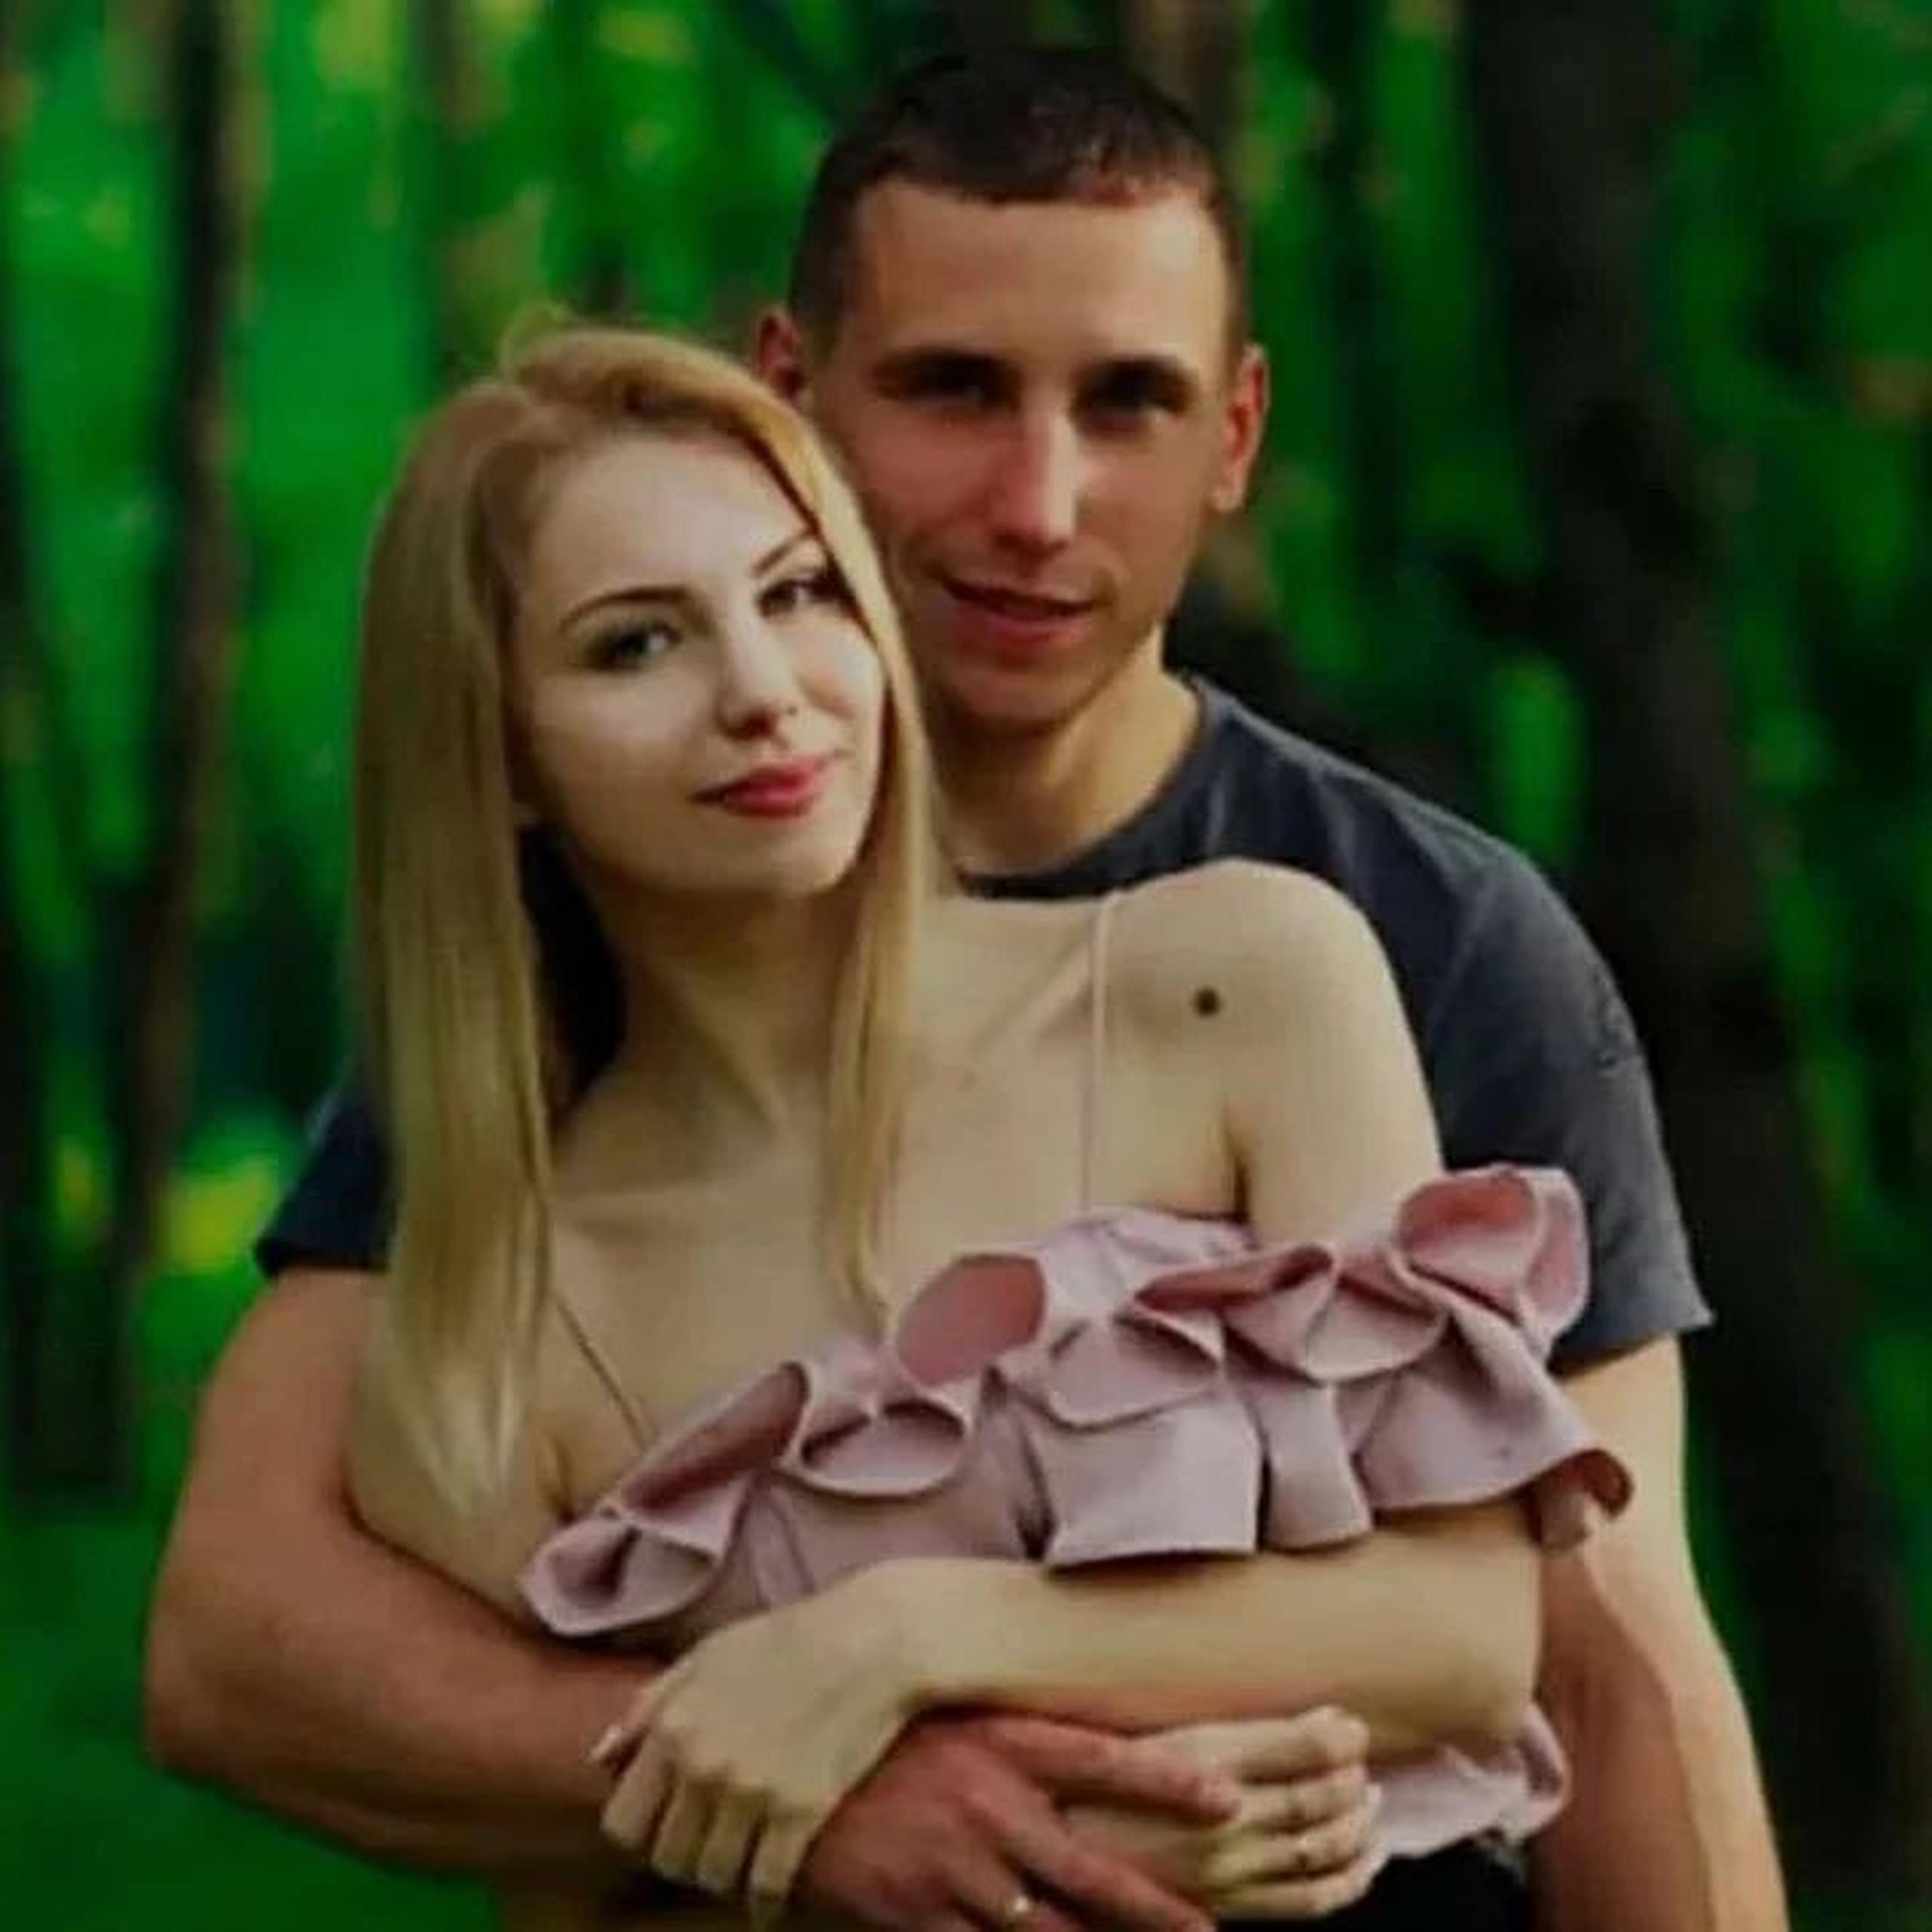 La conversación entre Roman Bykovsky y su esposa Olga Bykovskaya fue interceptada por el Servicio de Seguridad de Ucrania.